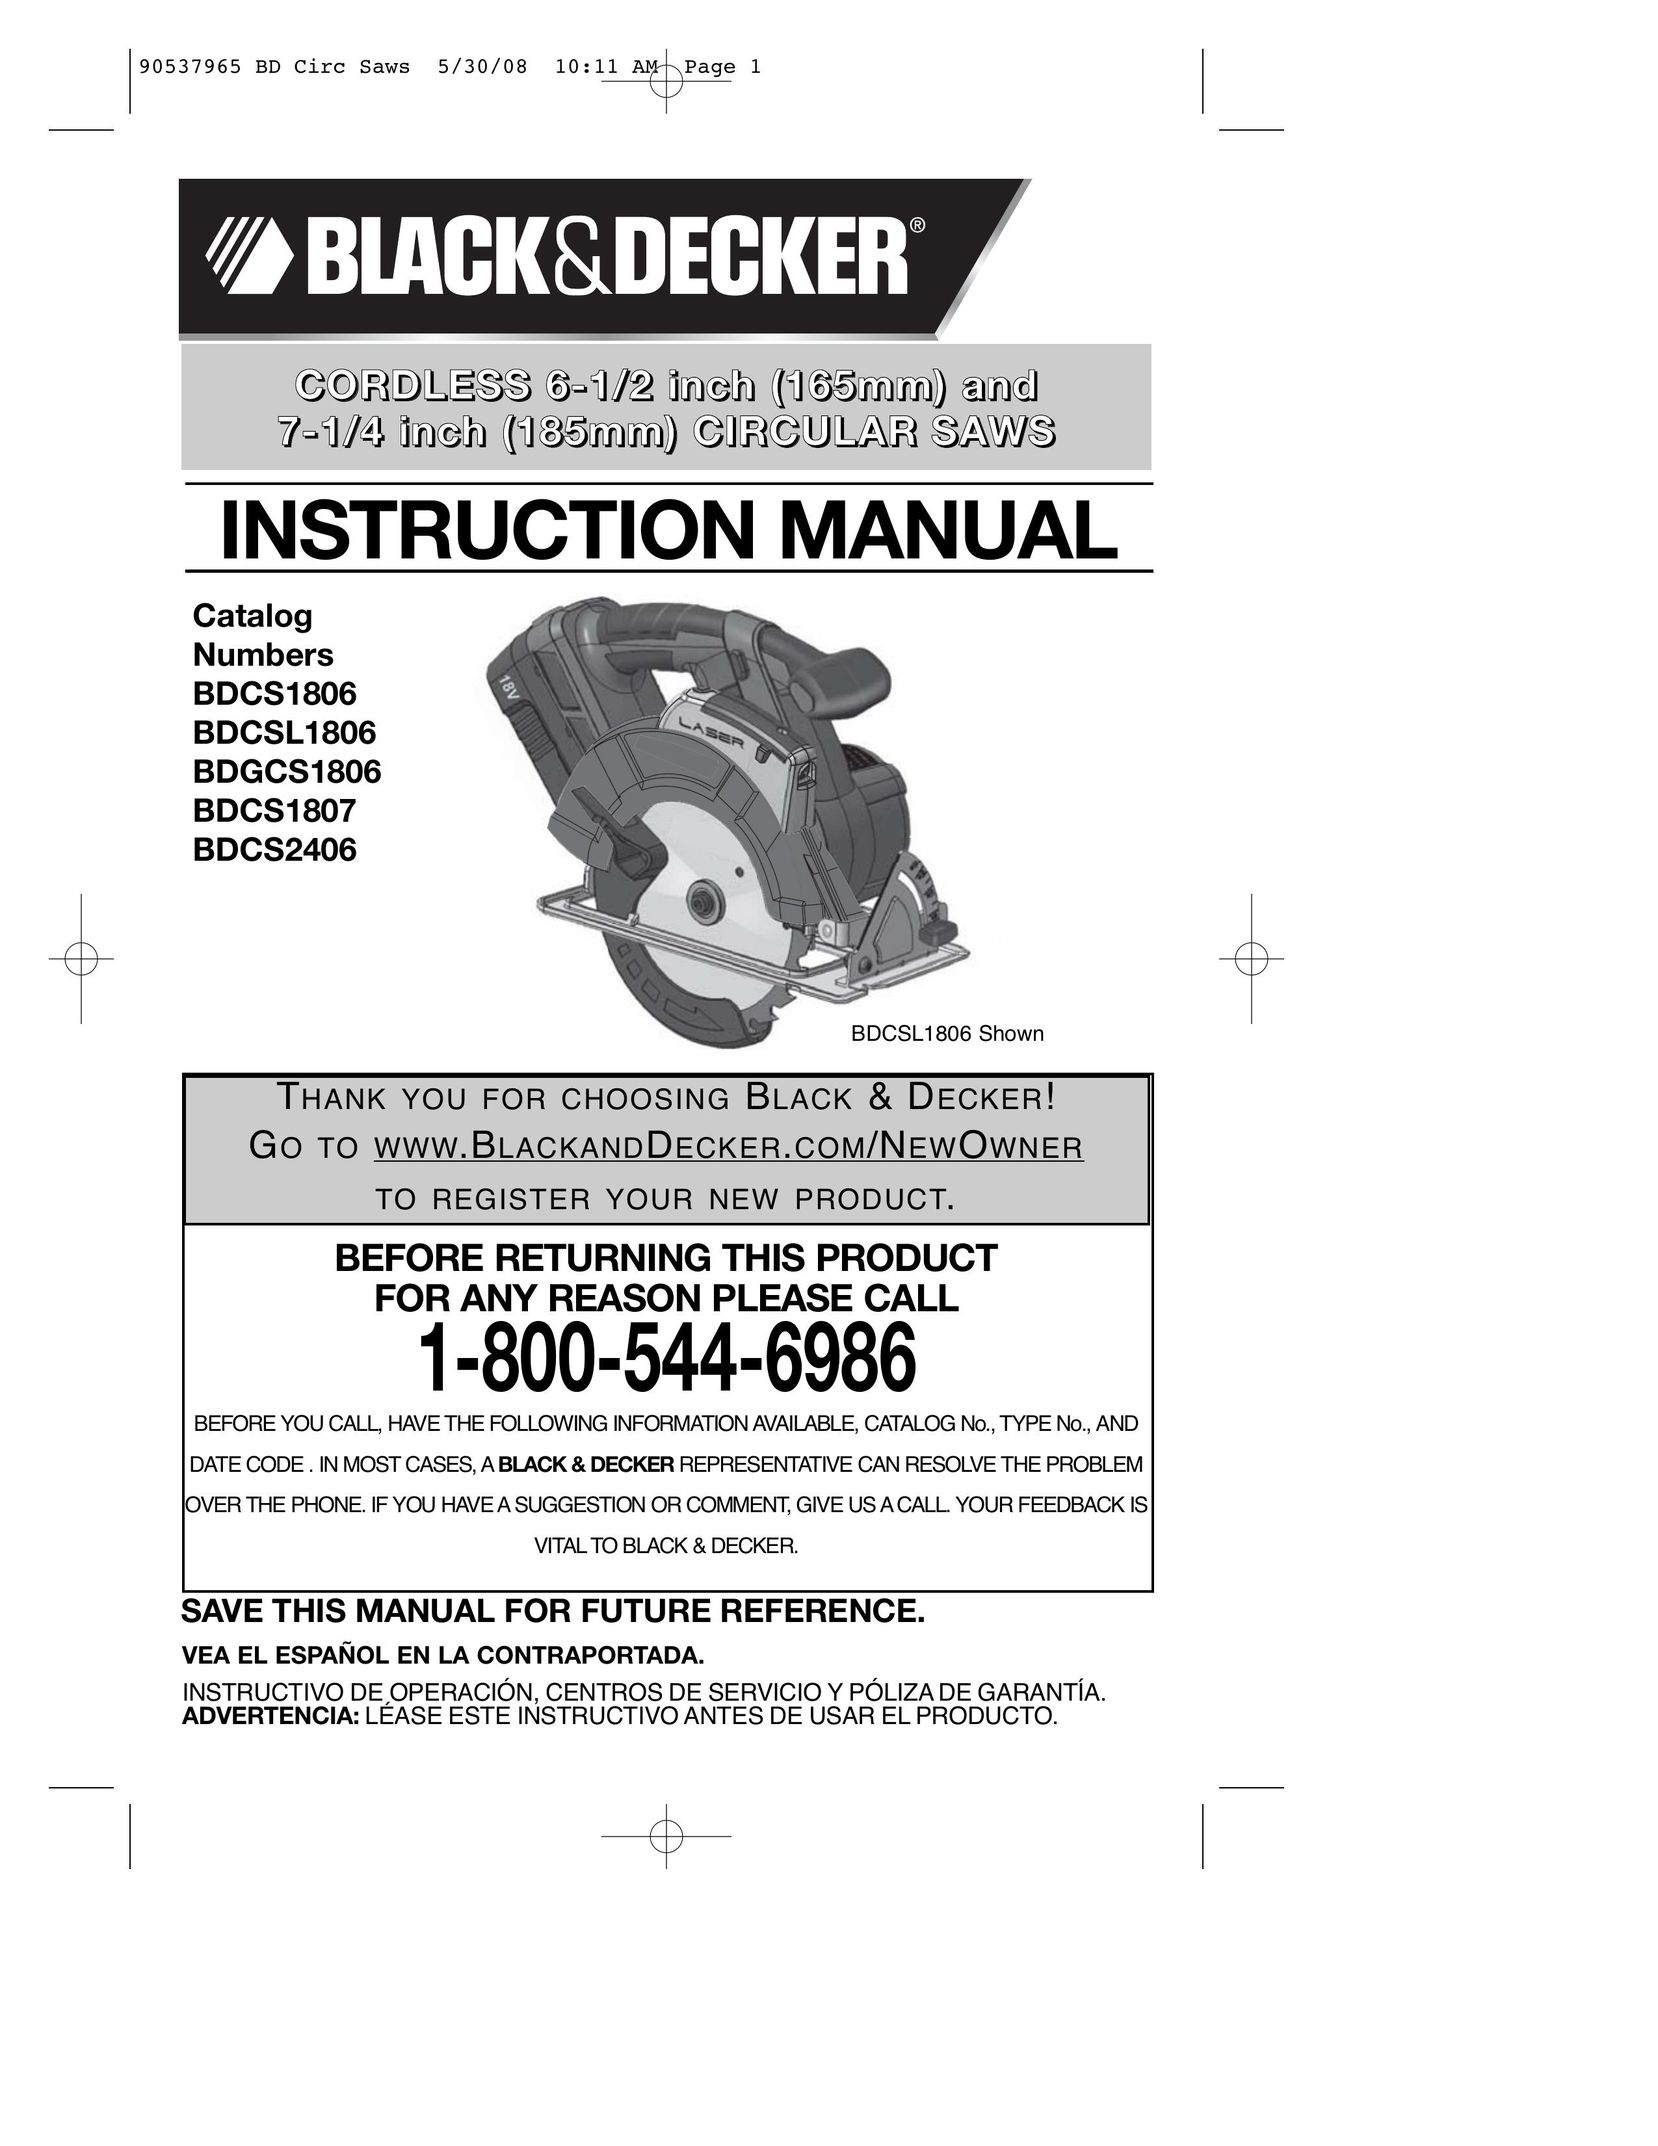 Black & Decker BDCSL1806 Cordless Saw User Manual